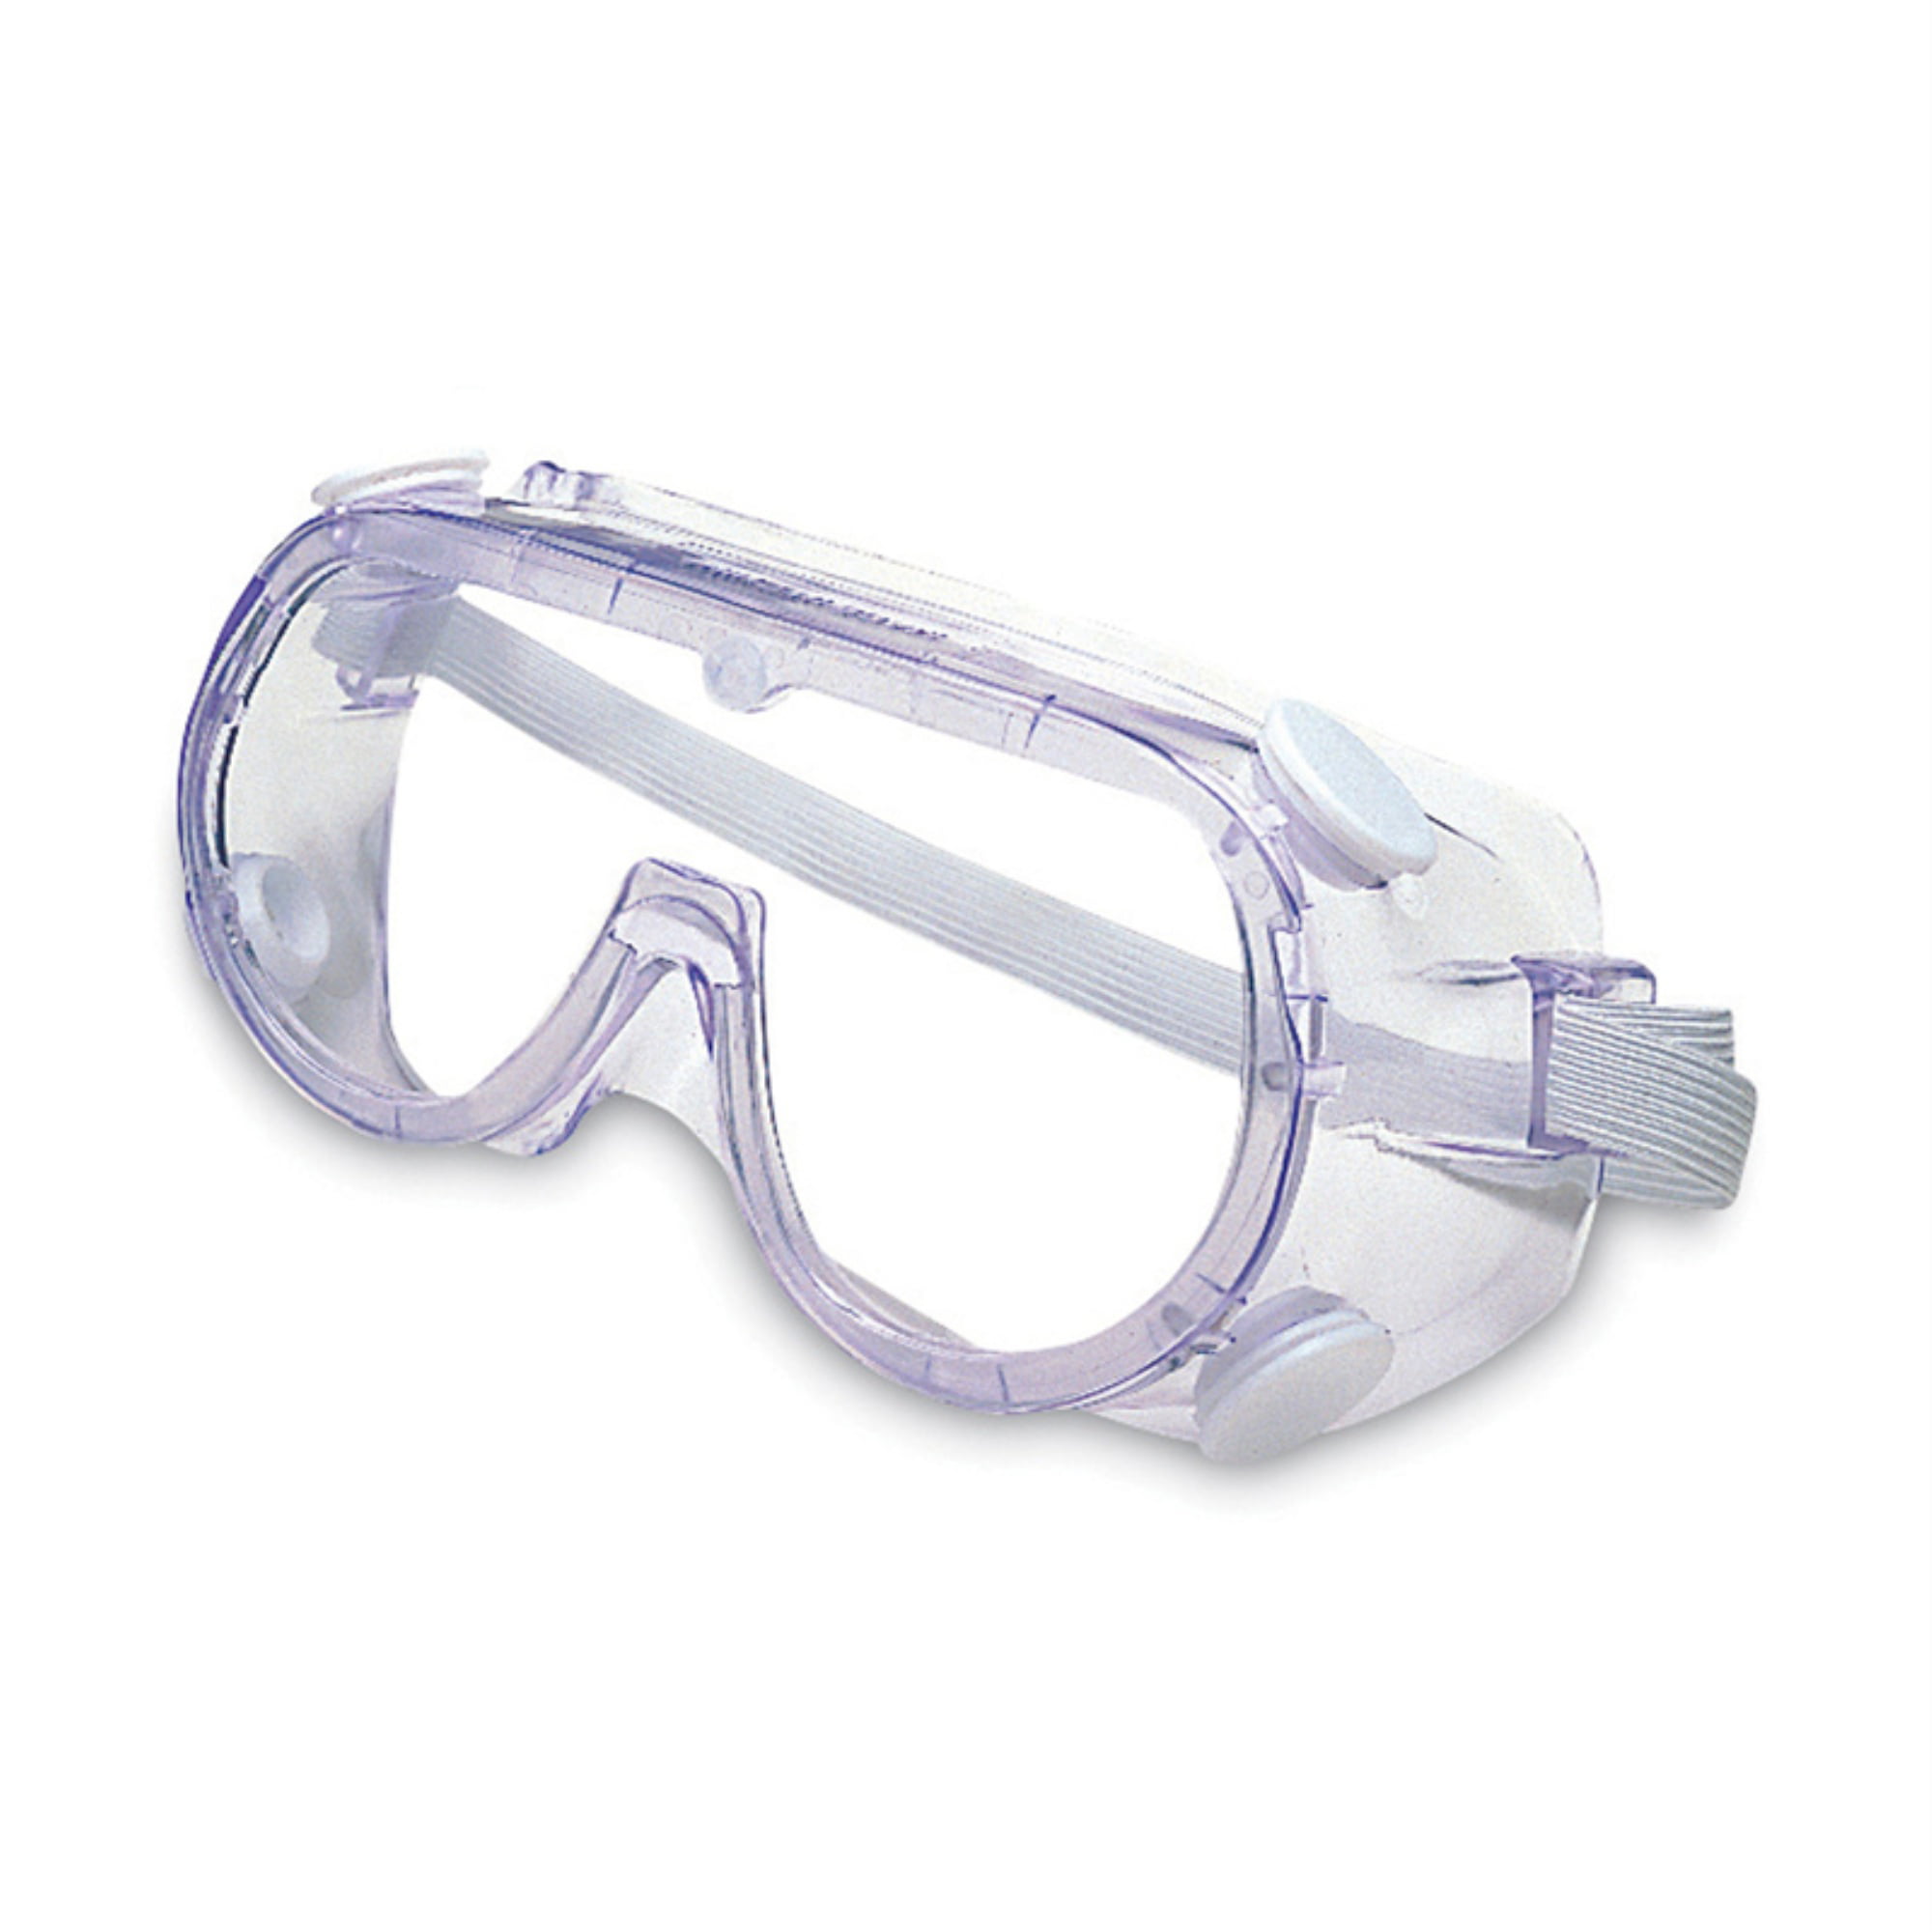 Лучшие защитные очки. Очки защитные темные Clear/ цветлые ANSI Z87.1. Очки защитные с прямой вентиляцией 89161. Очки защитные НМХ-02. Очки защитные с прямой вентиляцией стандарт (закрытые очк1403 синие).